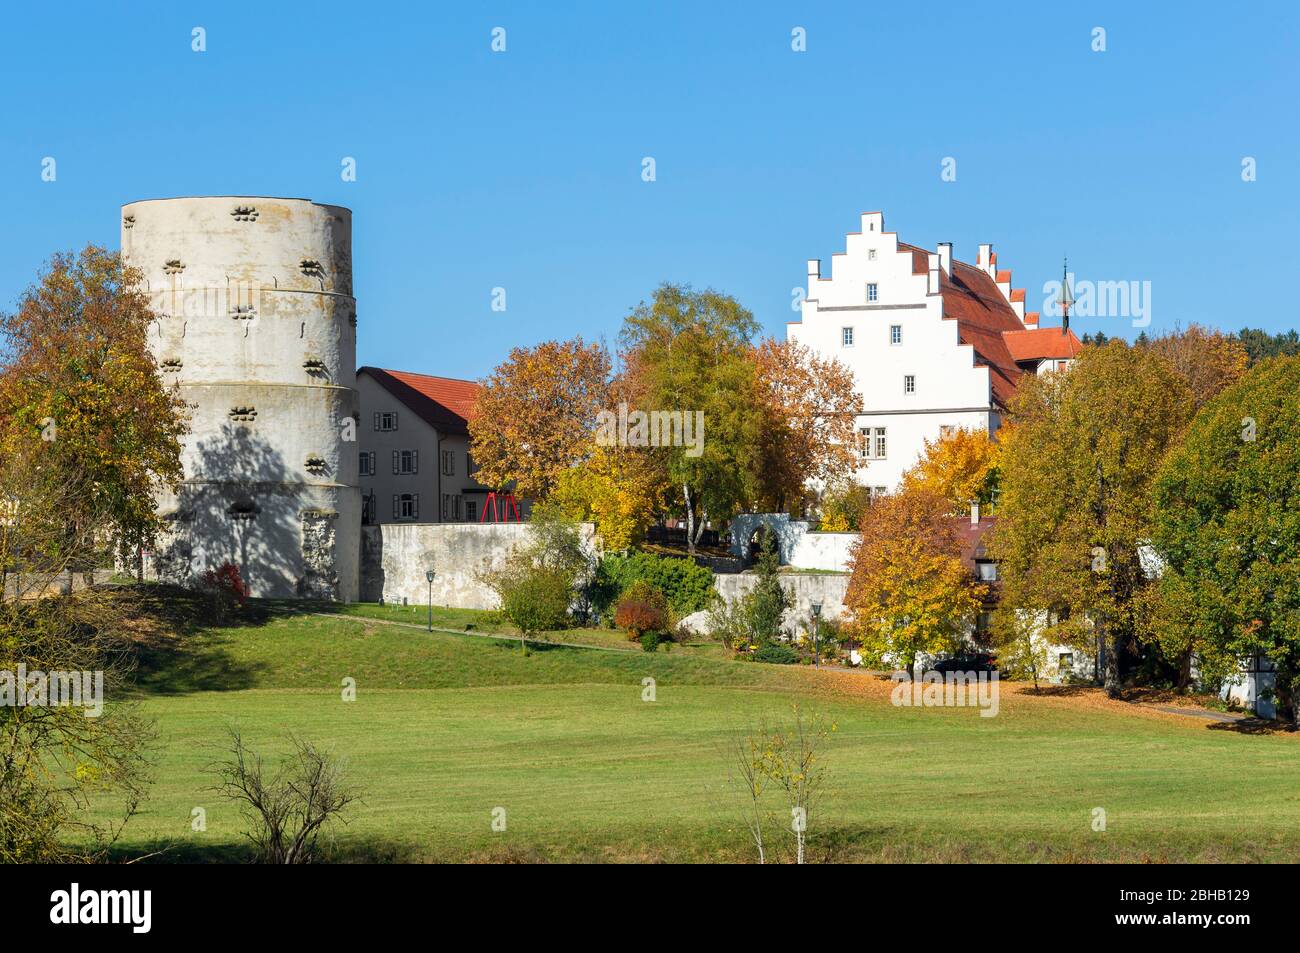 Deutschland, Baden-Württemberg, Trochtelfingen, Schloss Werdenberg wurde Mitte des 15. Jahrhunderts erbaut. Renaissanceschloss der Grafen von Werdenberg, heute Schule. Links der hohe Turm, Teil der ehemaligen Stadtbefestigung. Stockfoto